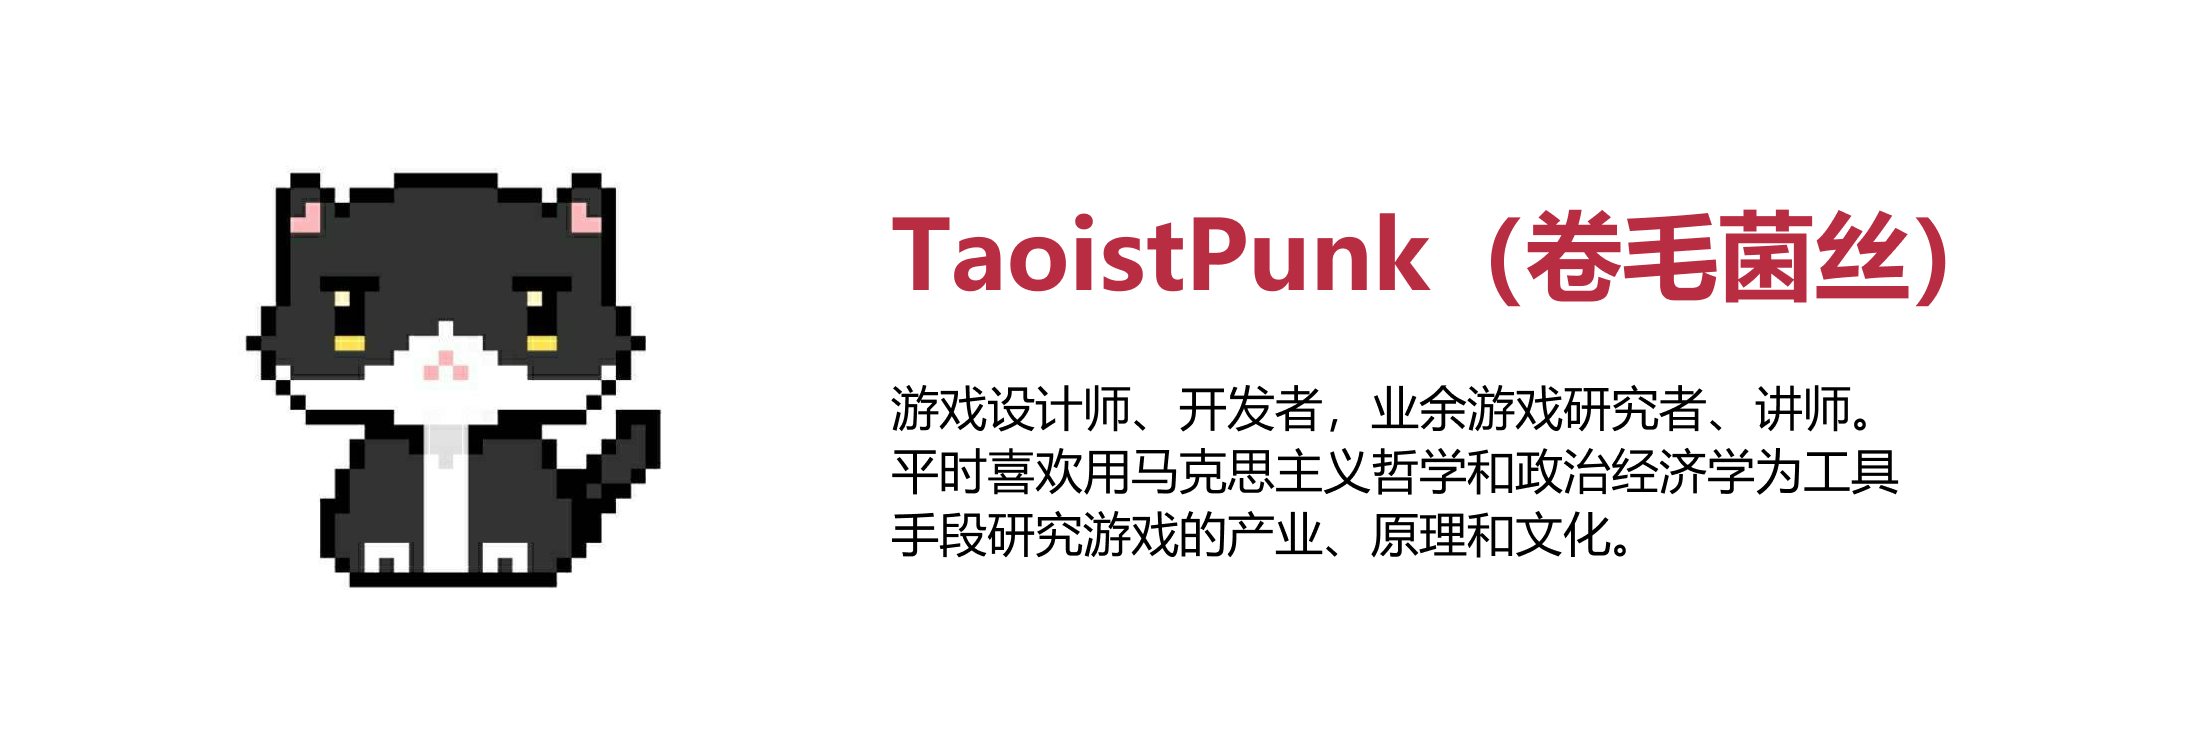 讀《資本論》的遊戲開發者與 Taoistpunk 的對談